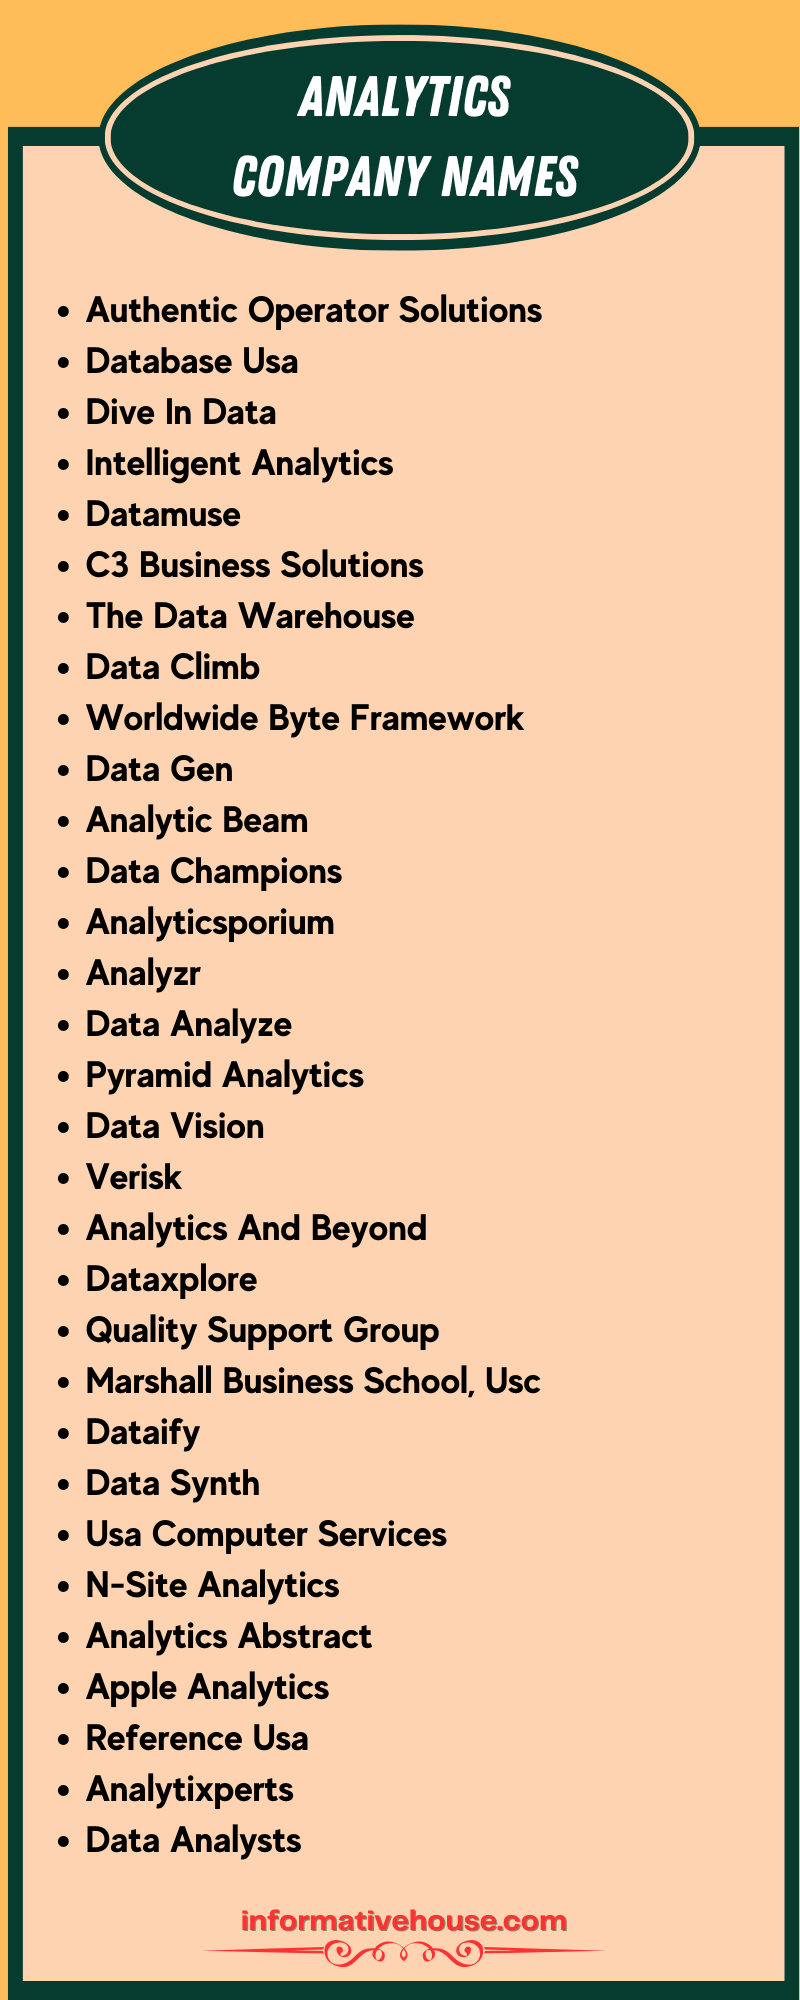 Analytics Company Names